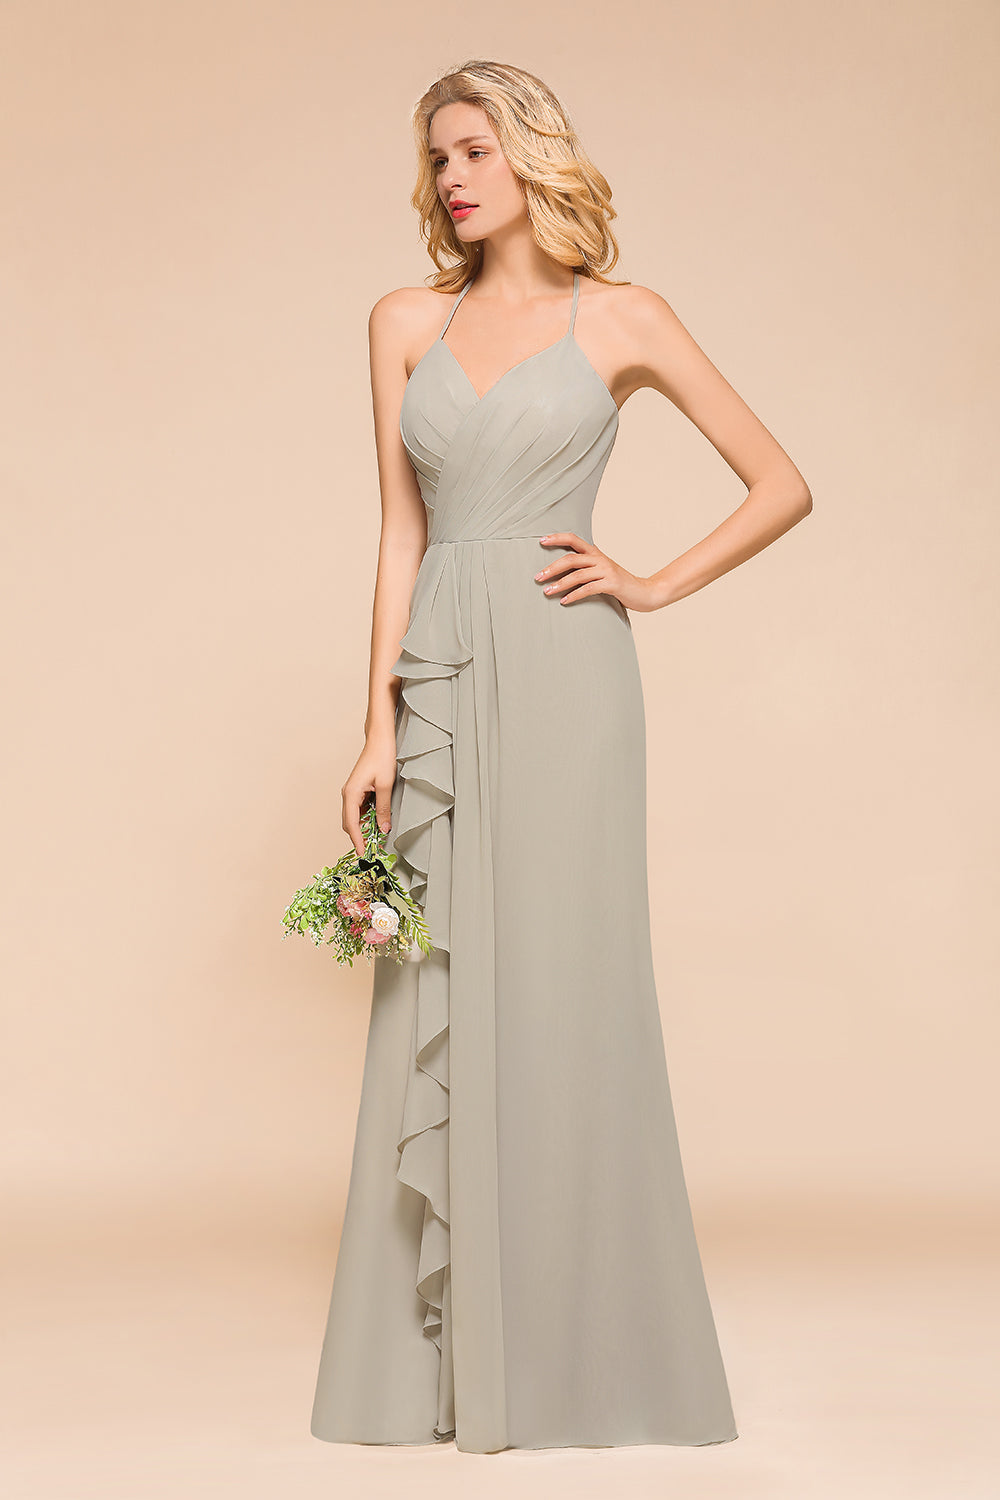 Finden Sie Elegante Brautjungfernkleider Lang Günstig online bei babyonlinedress.de. Schlichtes Hochzeitspartykleid für Sie zur Hochzeit gehen.